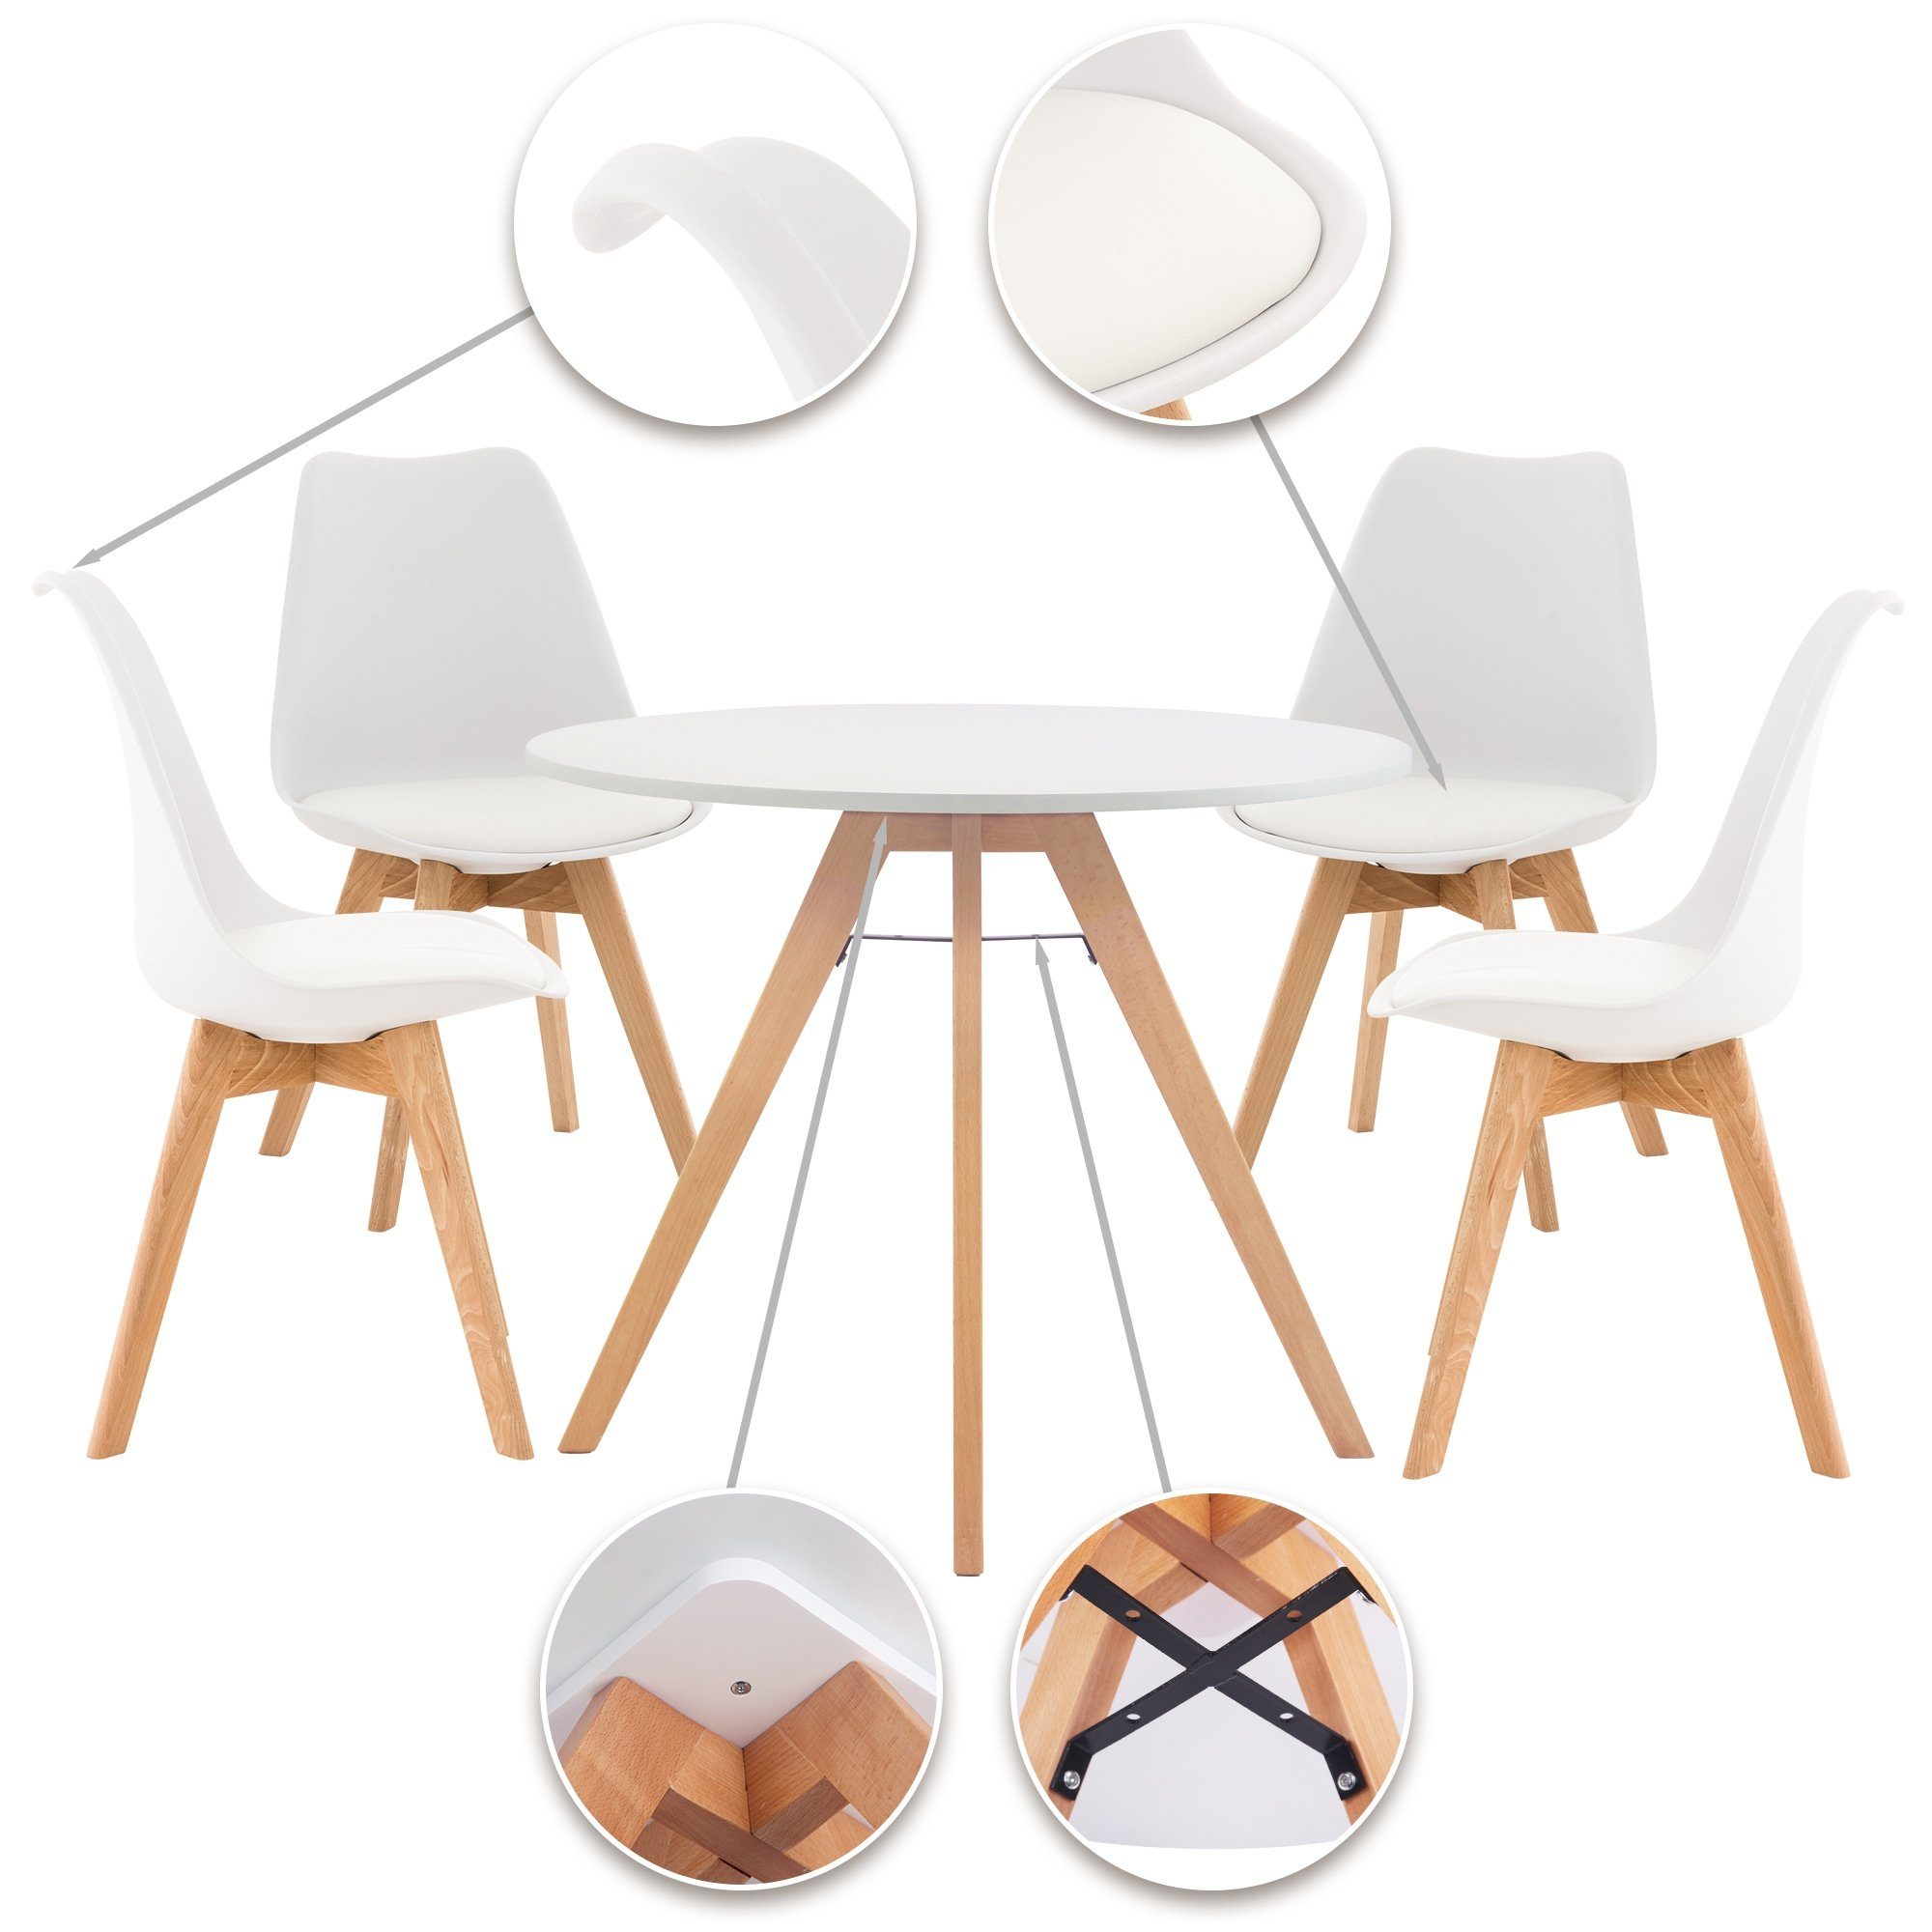 CLP Essgruppe Livik, 1 Tisch mit Sitzpolster, 4 mit und Buchenholz Stühle